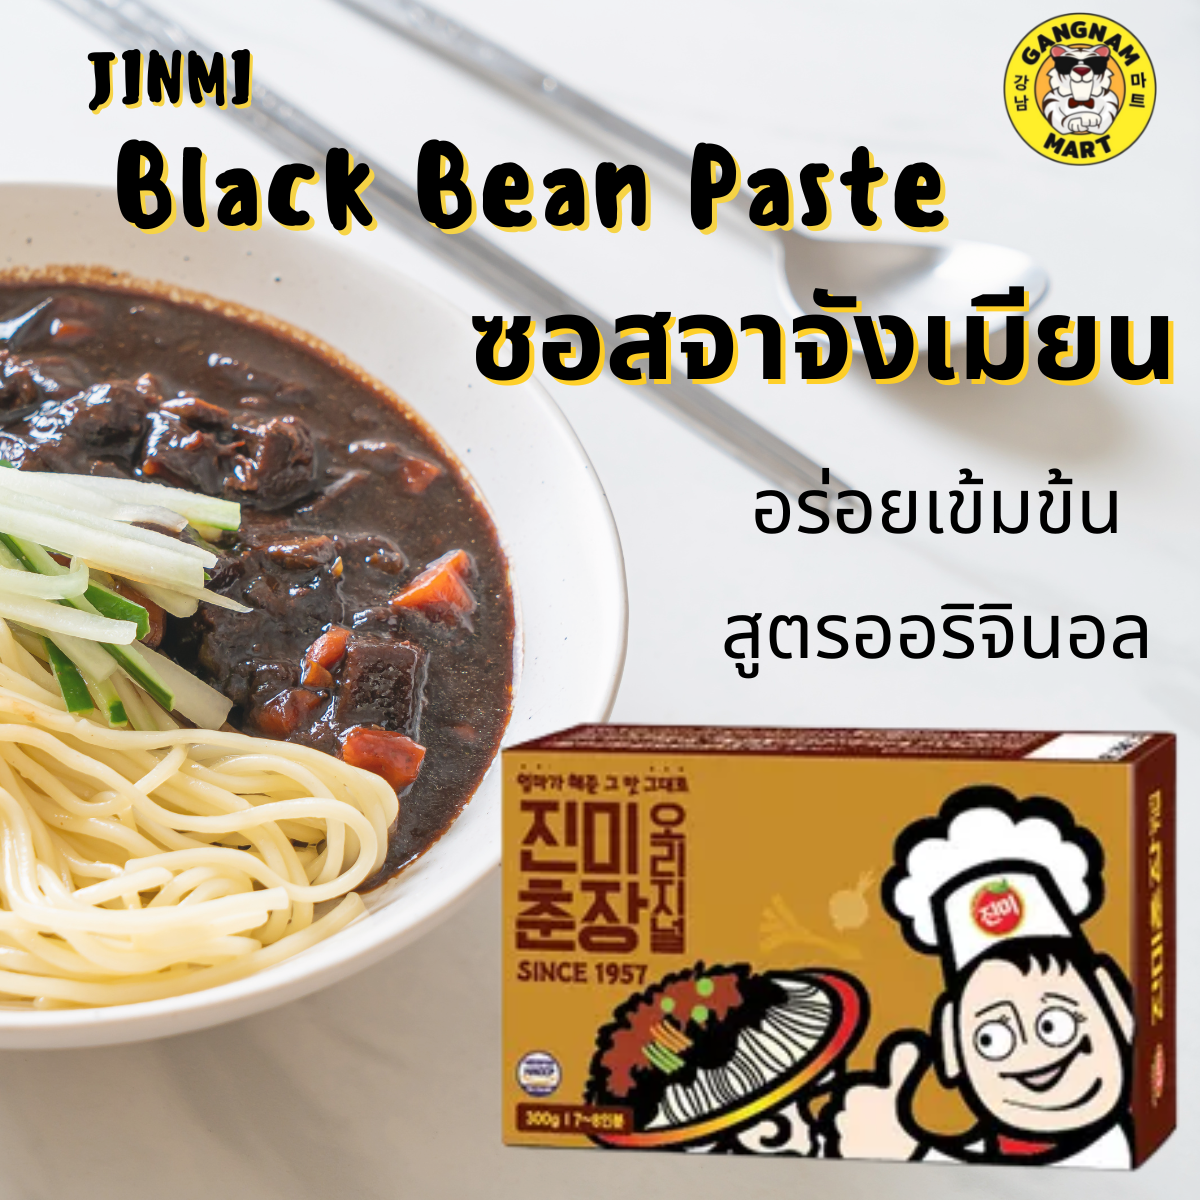 JINMI Black Bean Paste 300G